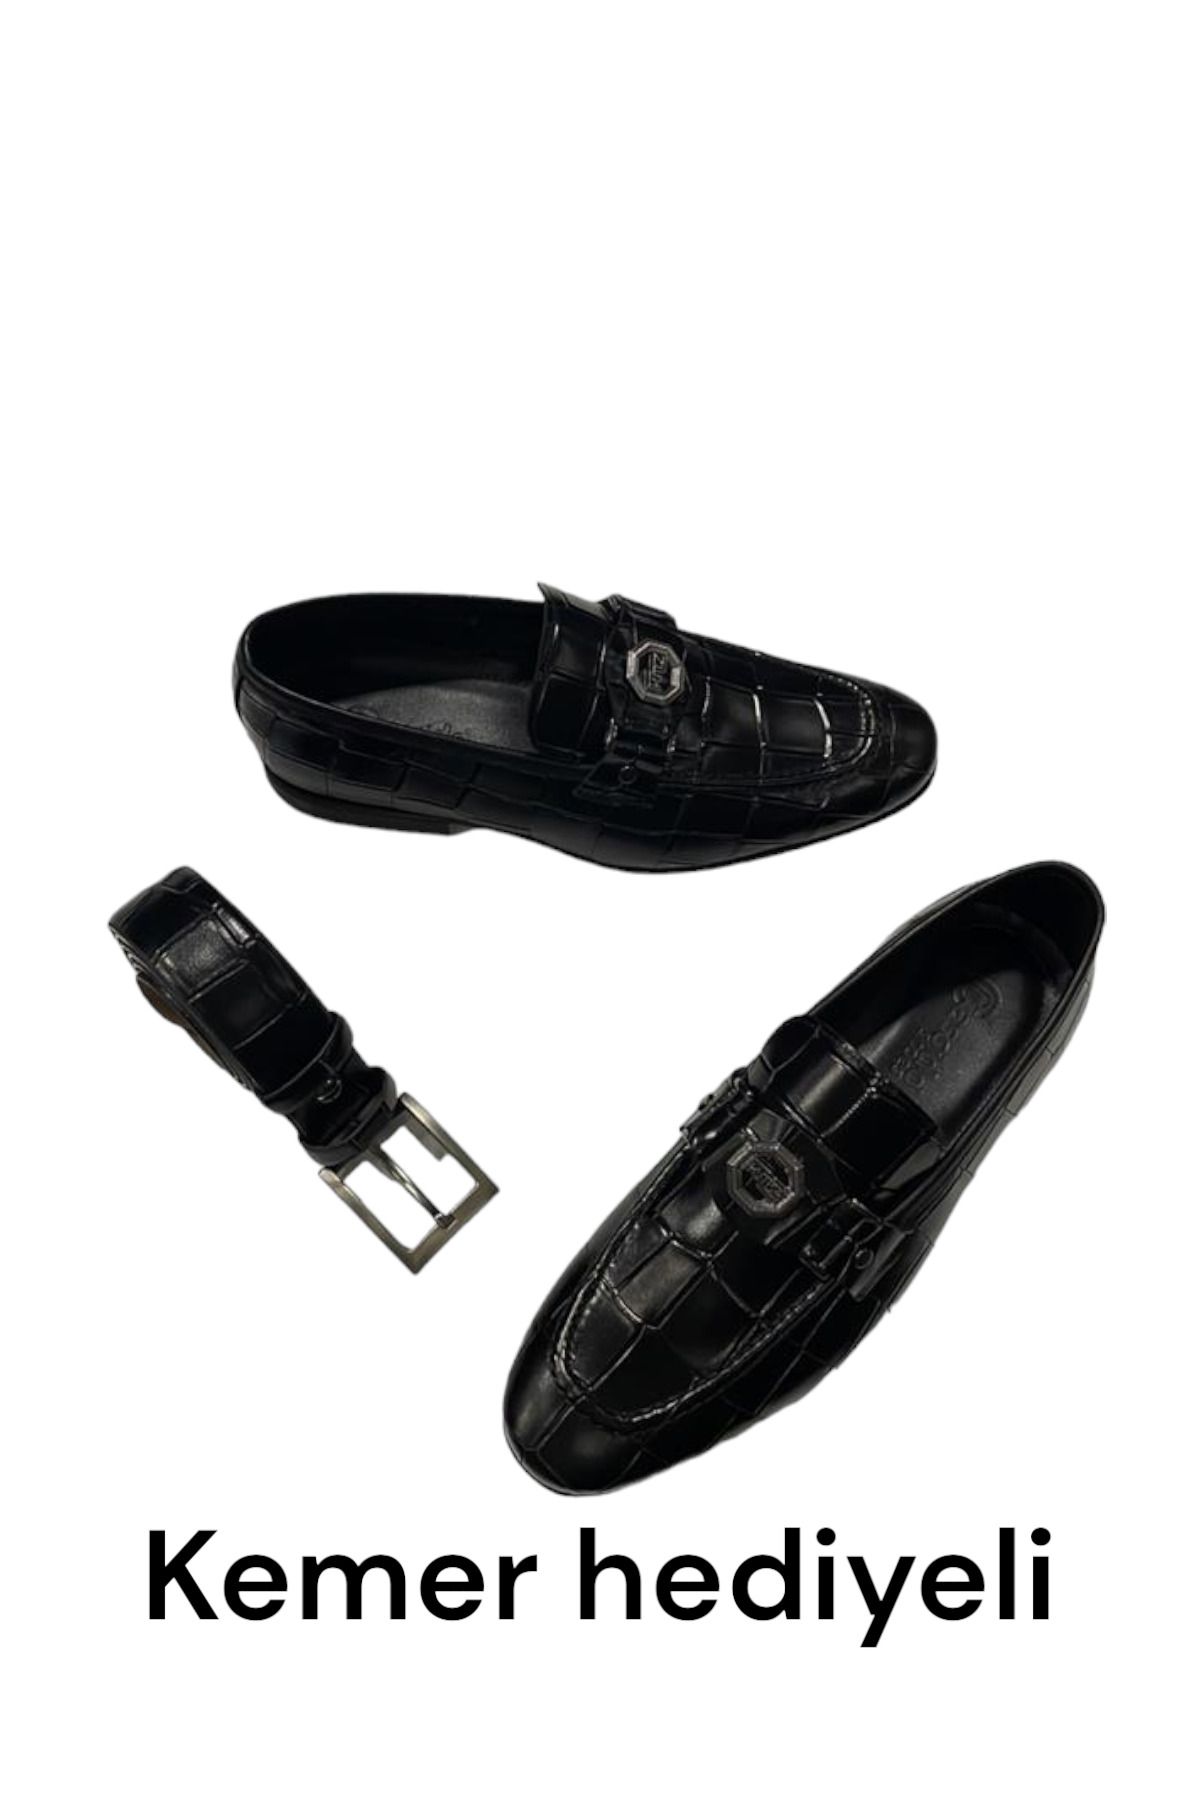 CassidoShoes Hakiki Deri Kroko Baskılı Erkek Siyah Klasik Ayakkabı Kemer Hediyeli 023-64240